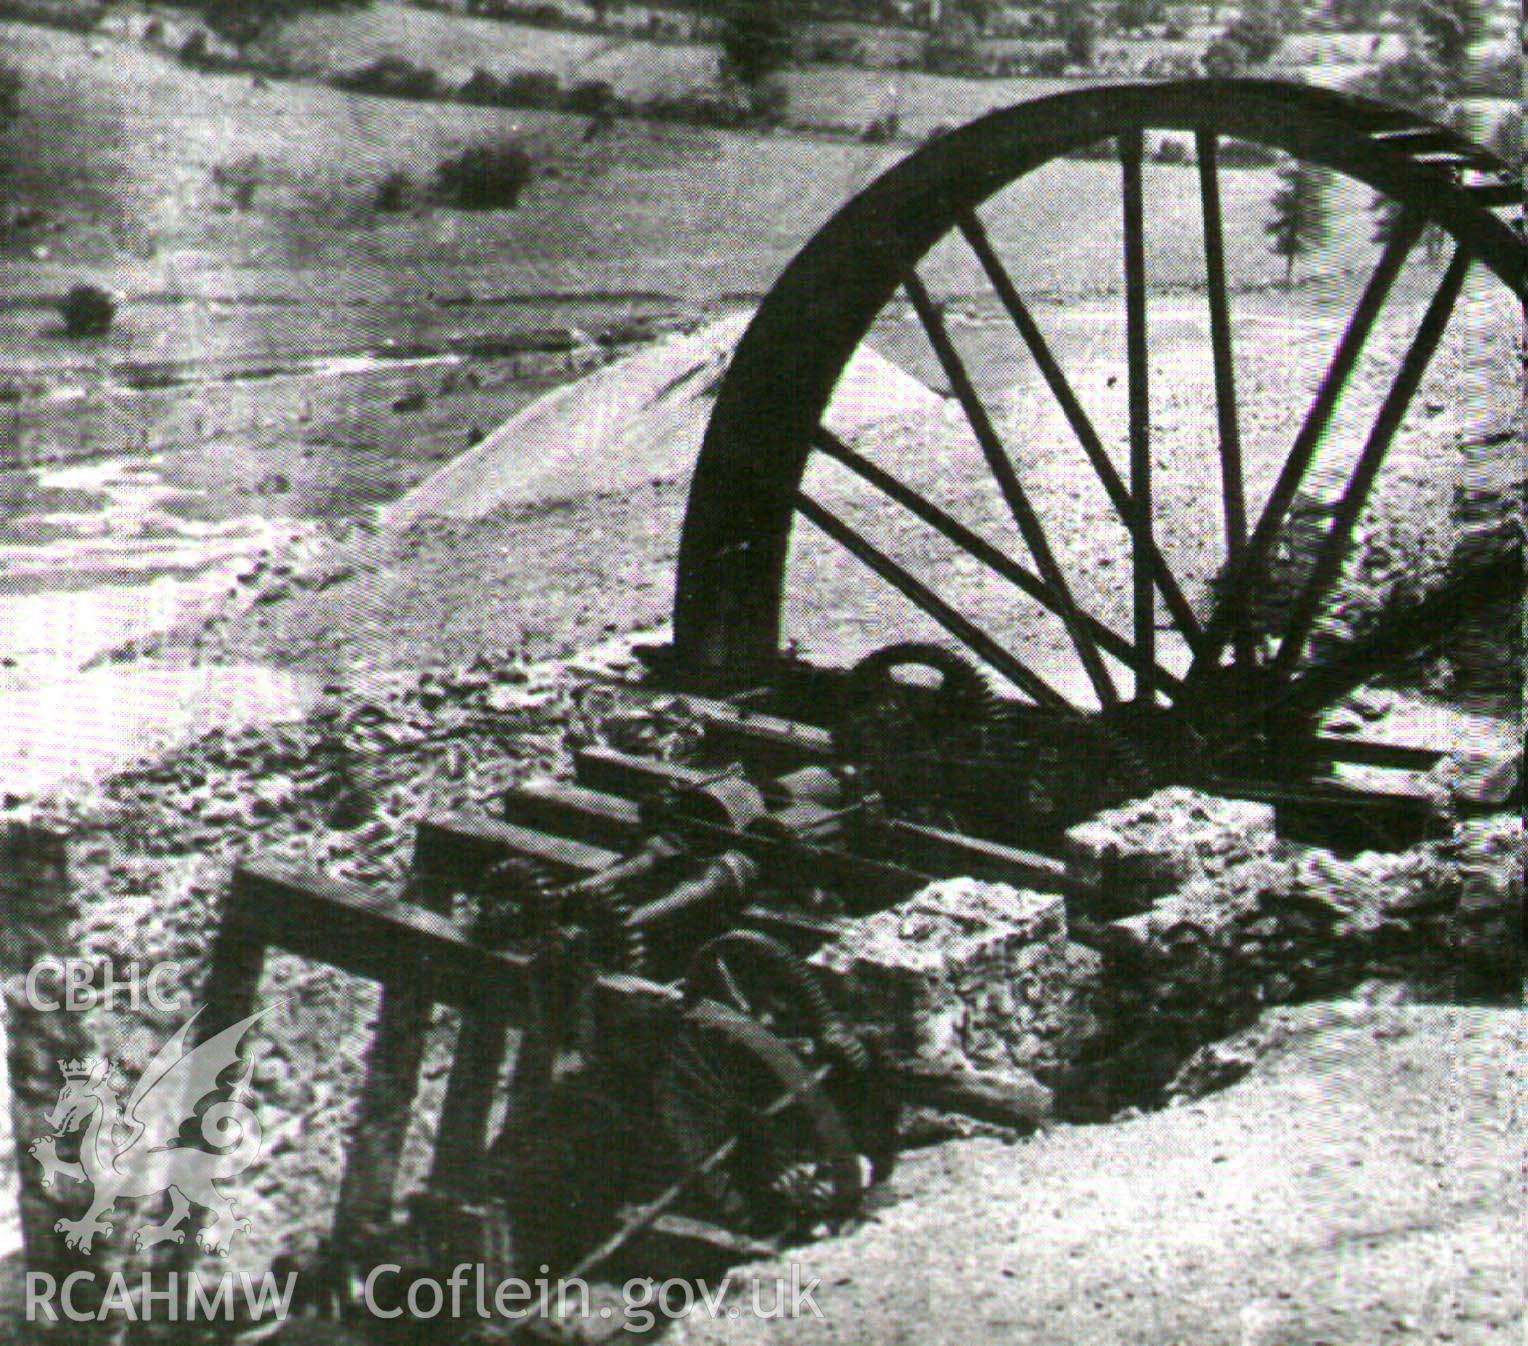 Digital image of remains of Cornish rolls and waterwheel formerly at Craig y Mwyn Mine, Llangynog, William, 1980